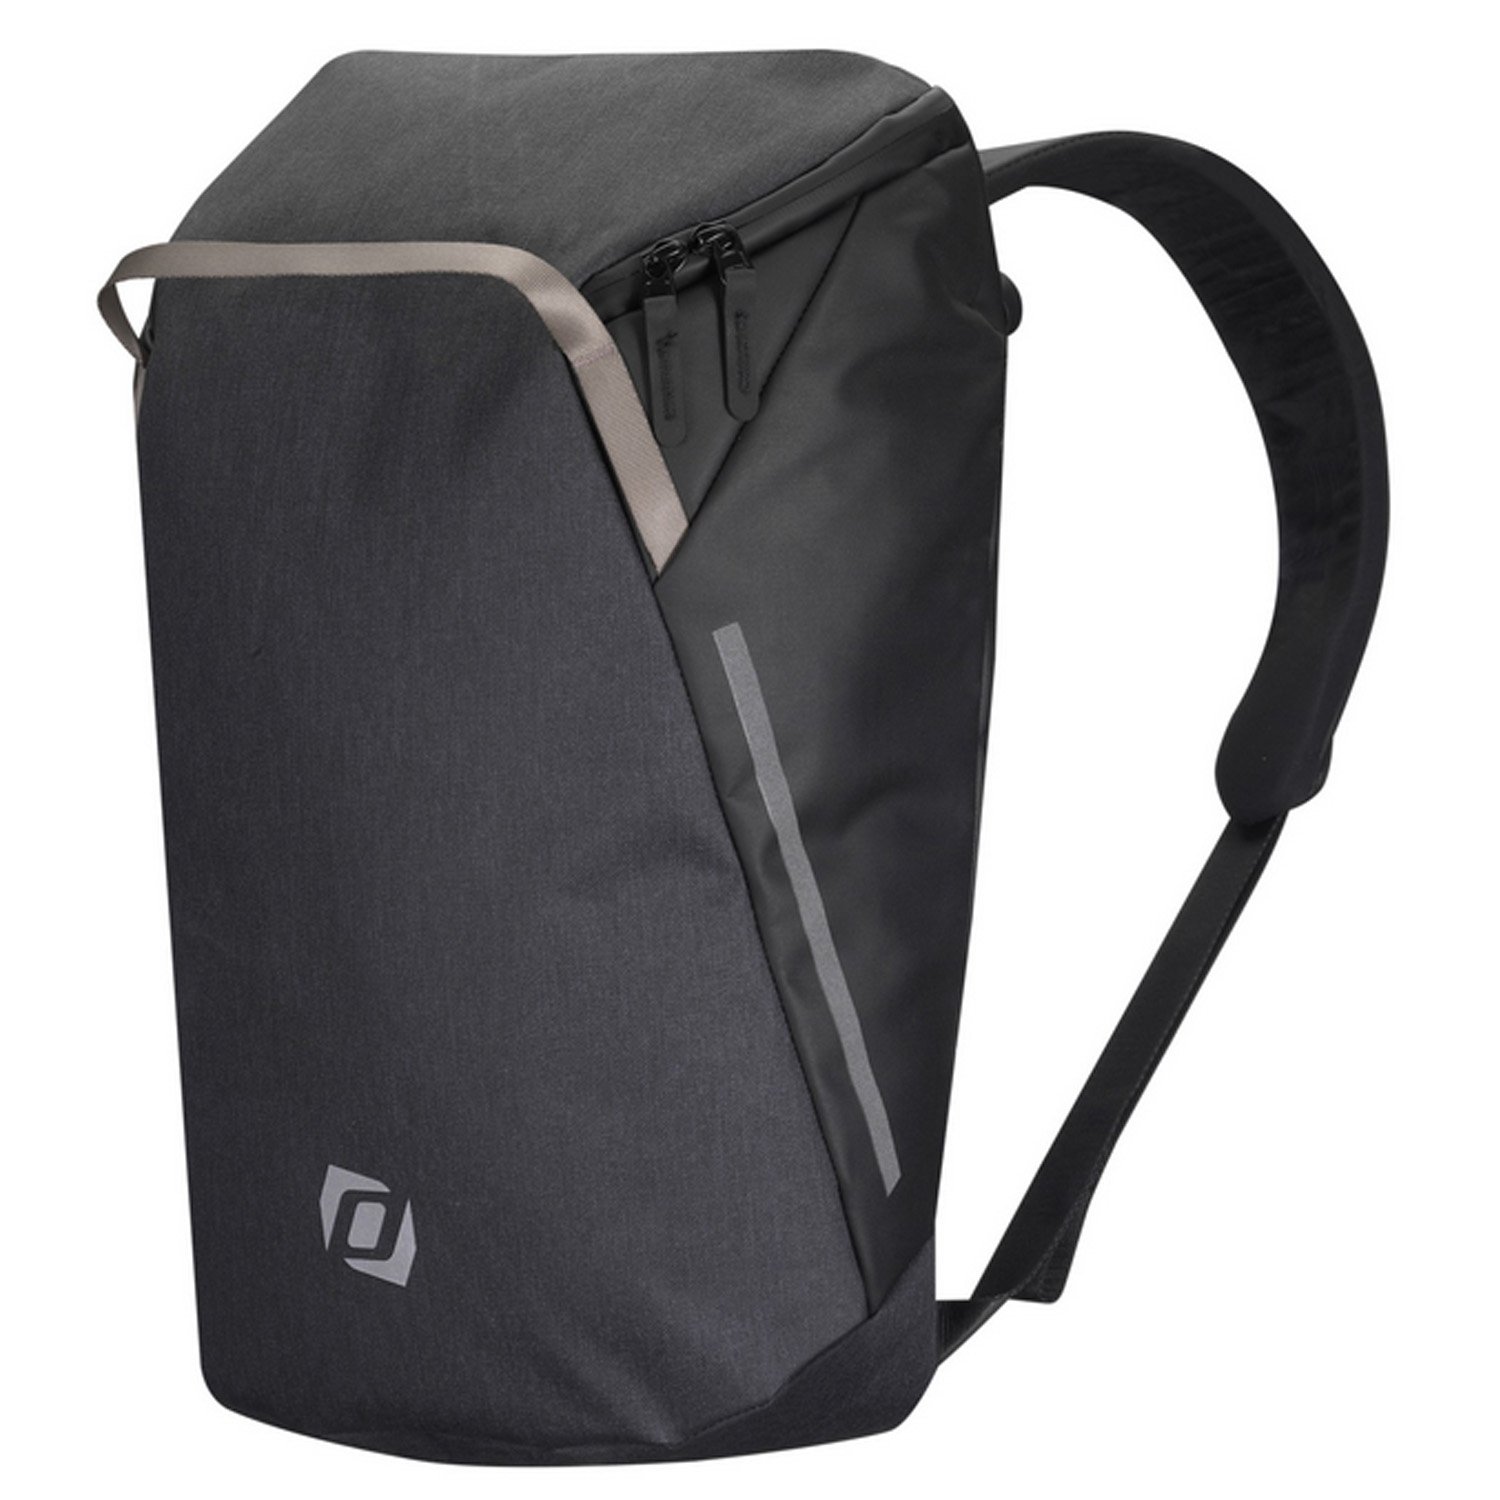 Велосумка Syncros Backpack, для багажника, черный, ES281116-0001 велосумка syncros backpack для багажника es281116 0001